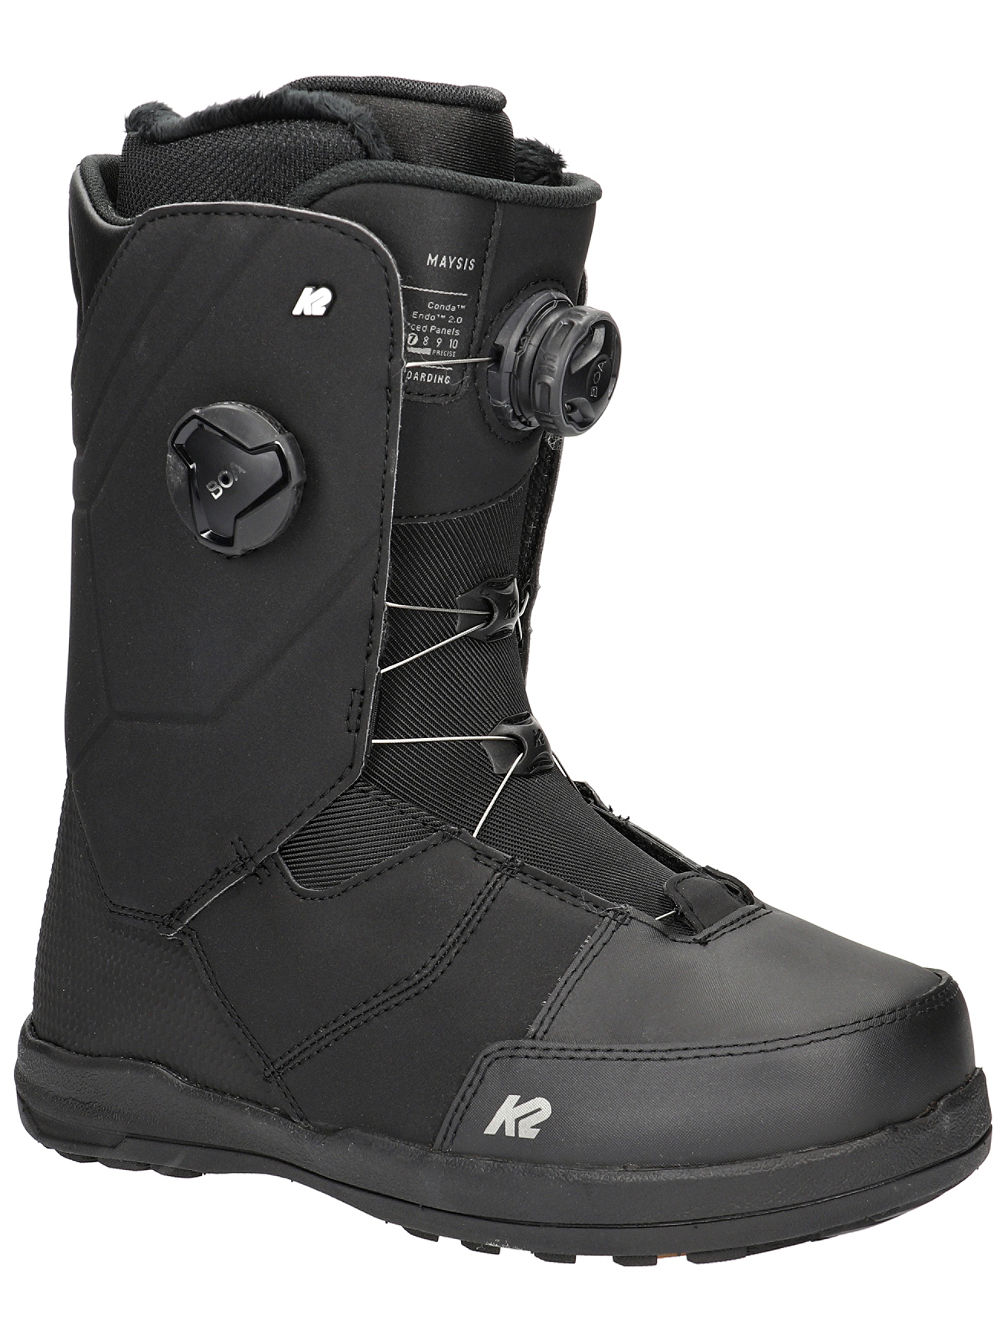 Boots Snowboard K2 Maysis Black 2022